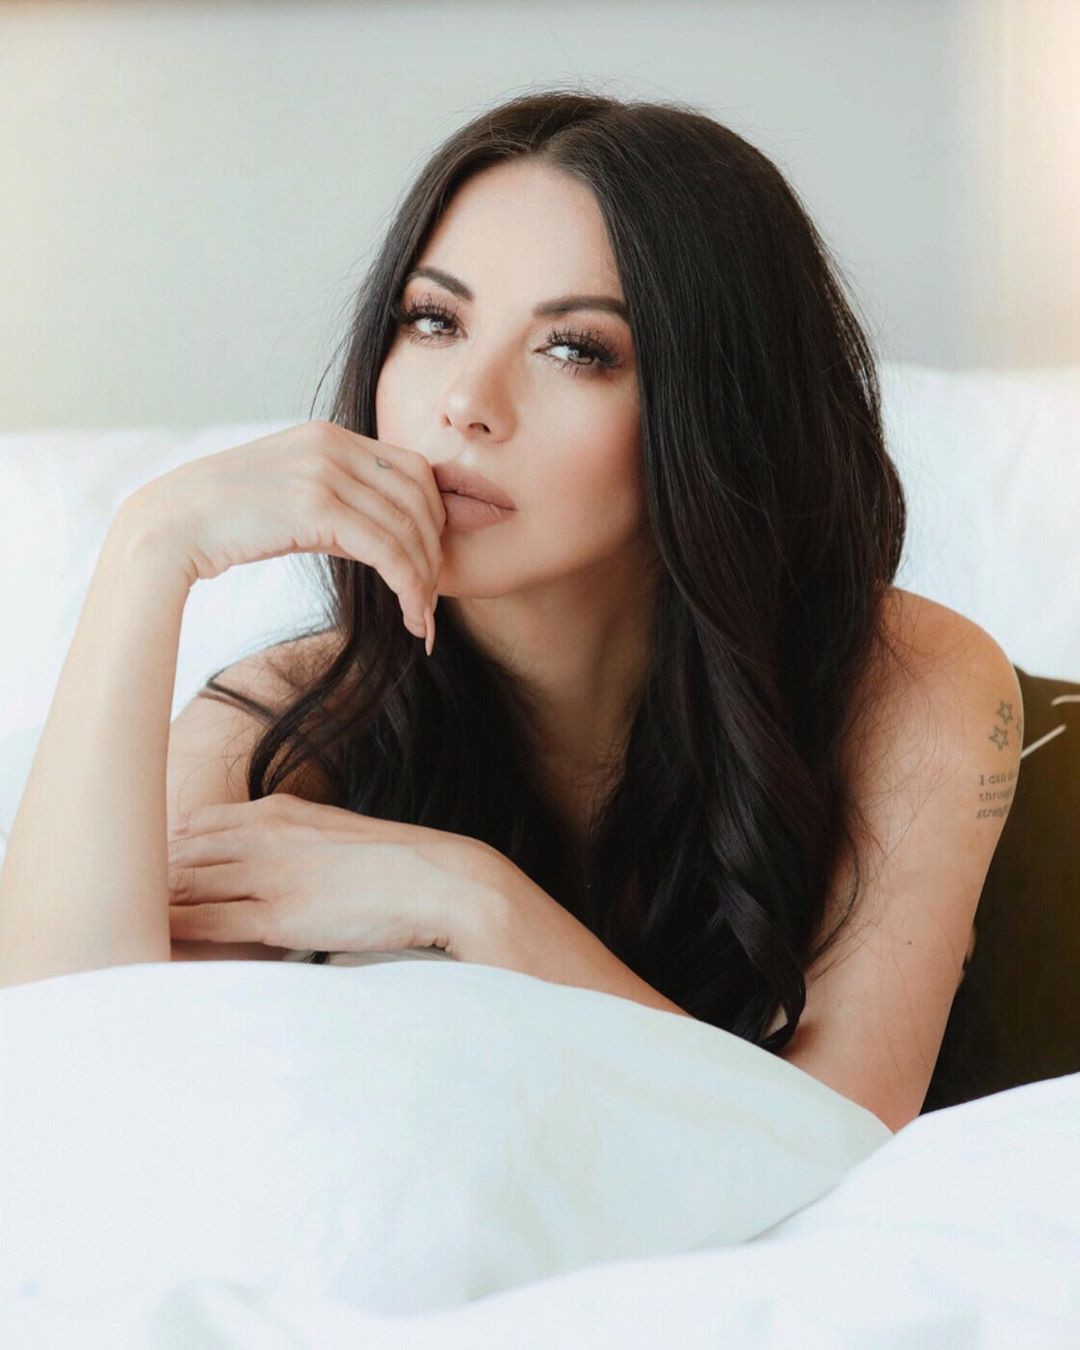 How to carry jimena sanchez, Jimena Sanchez: Television presenter,  Hot Instagram Models  